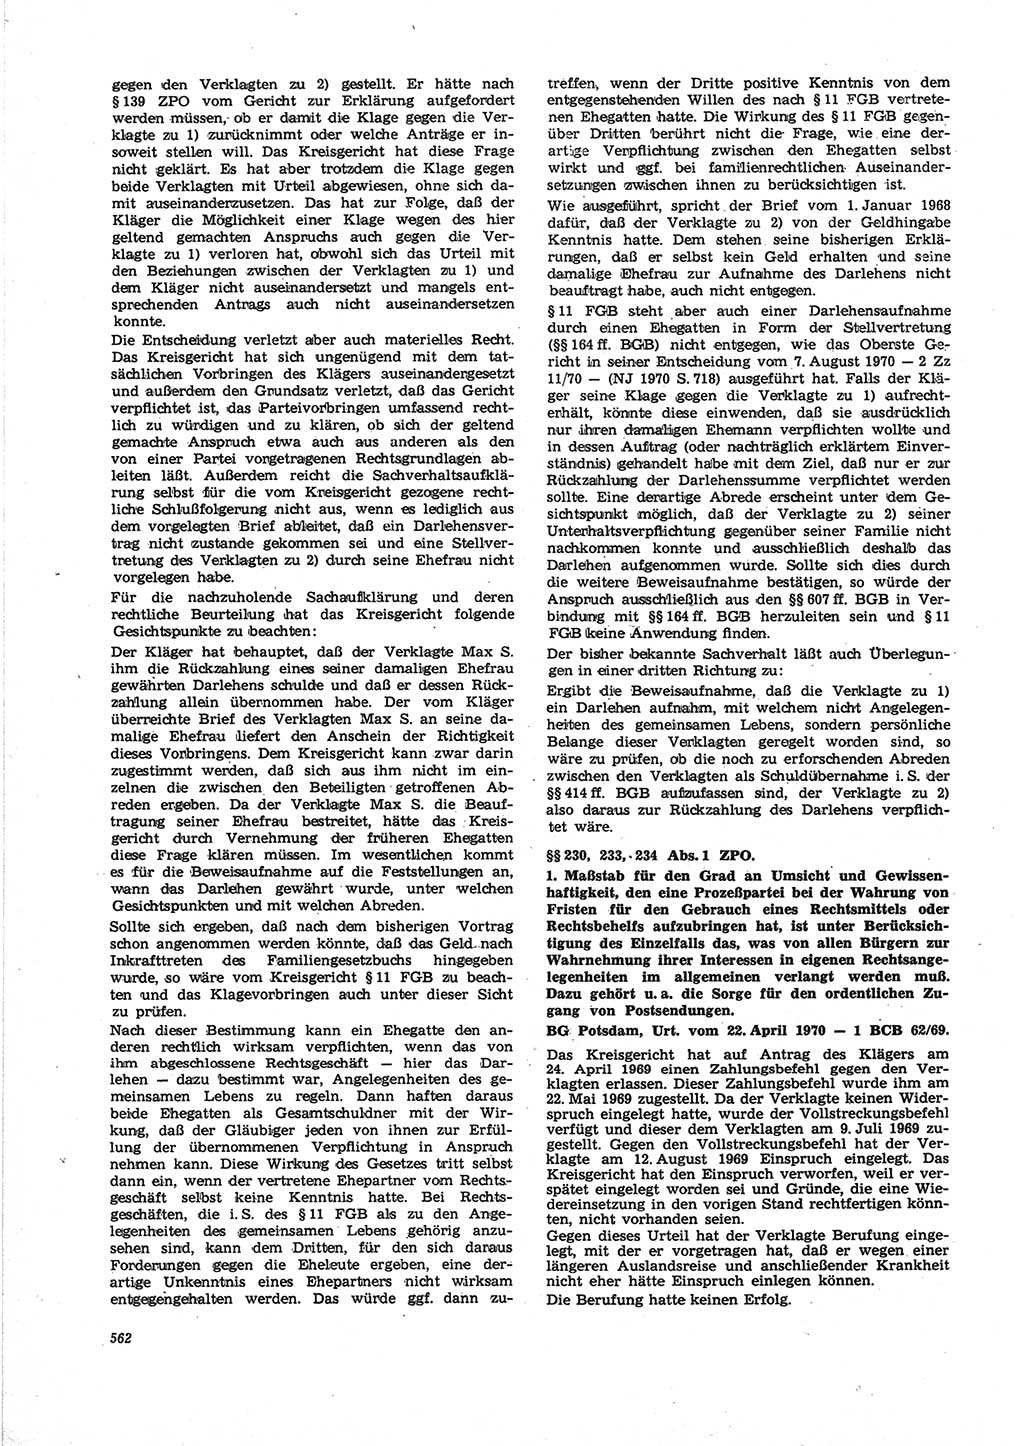 Neue Justiz (NJ), Zeitschrift für Recht und Rechtswissenschaft [Deutsche Demokratische Republik (DDR)], 25. Jahrgang 1971, Seite 562 (NJ DDR 1971, S. 562)